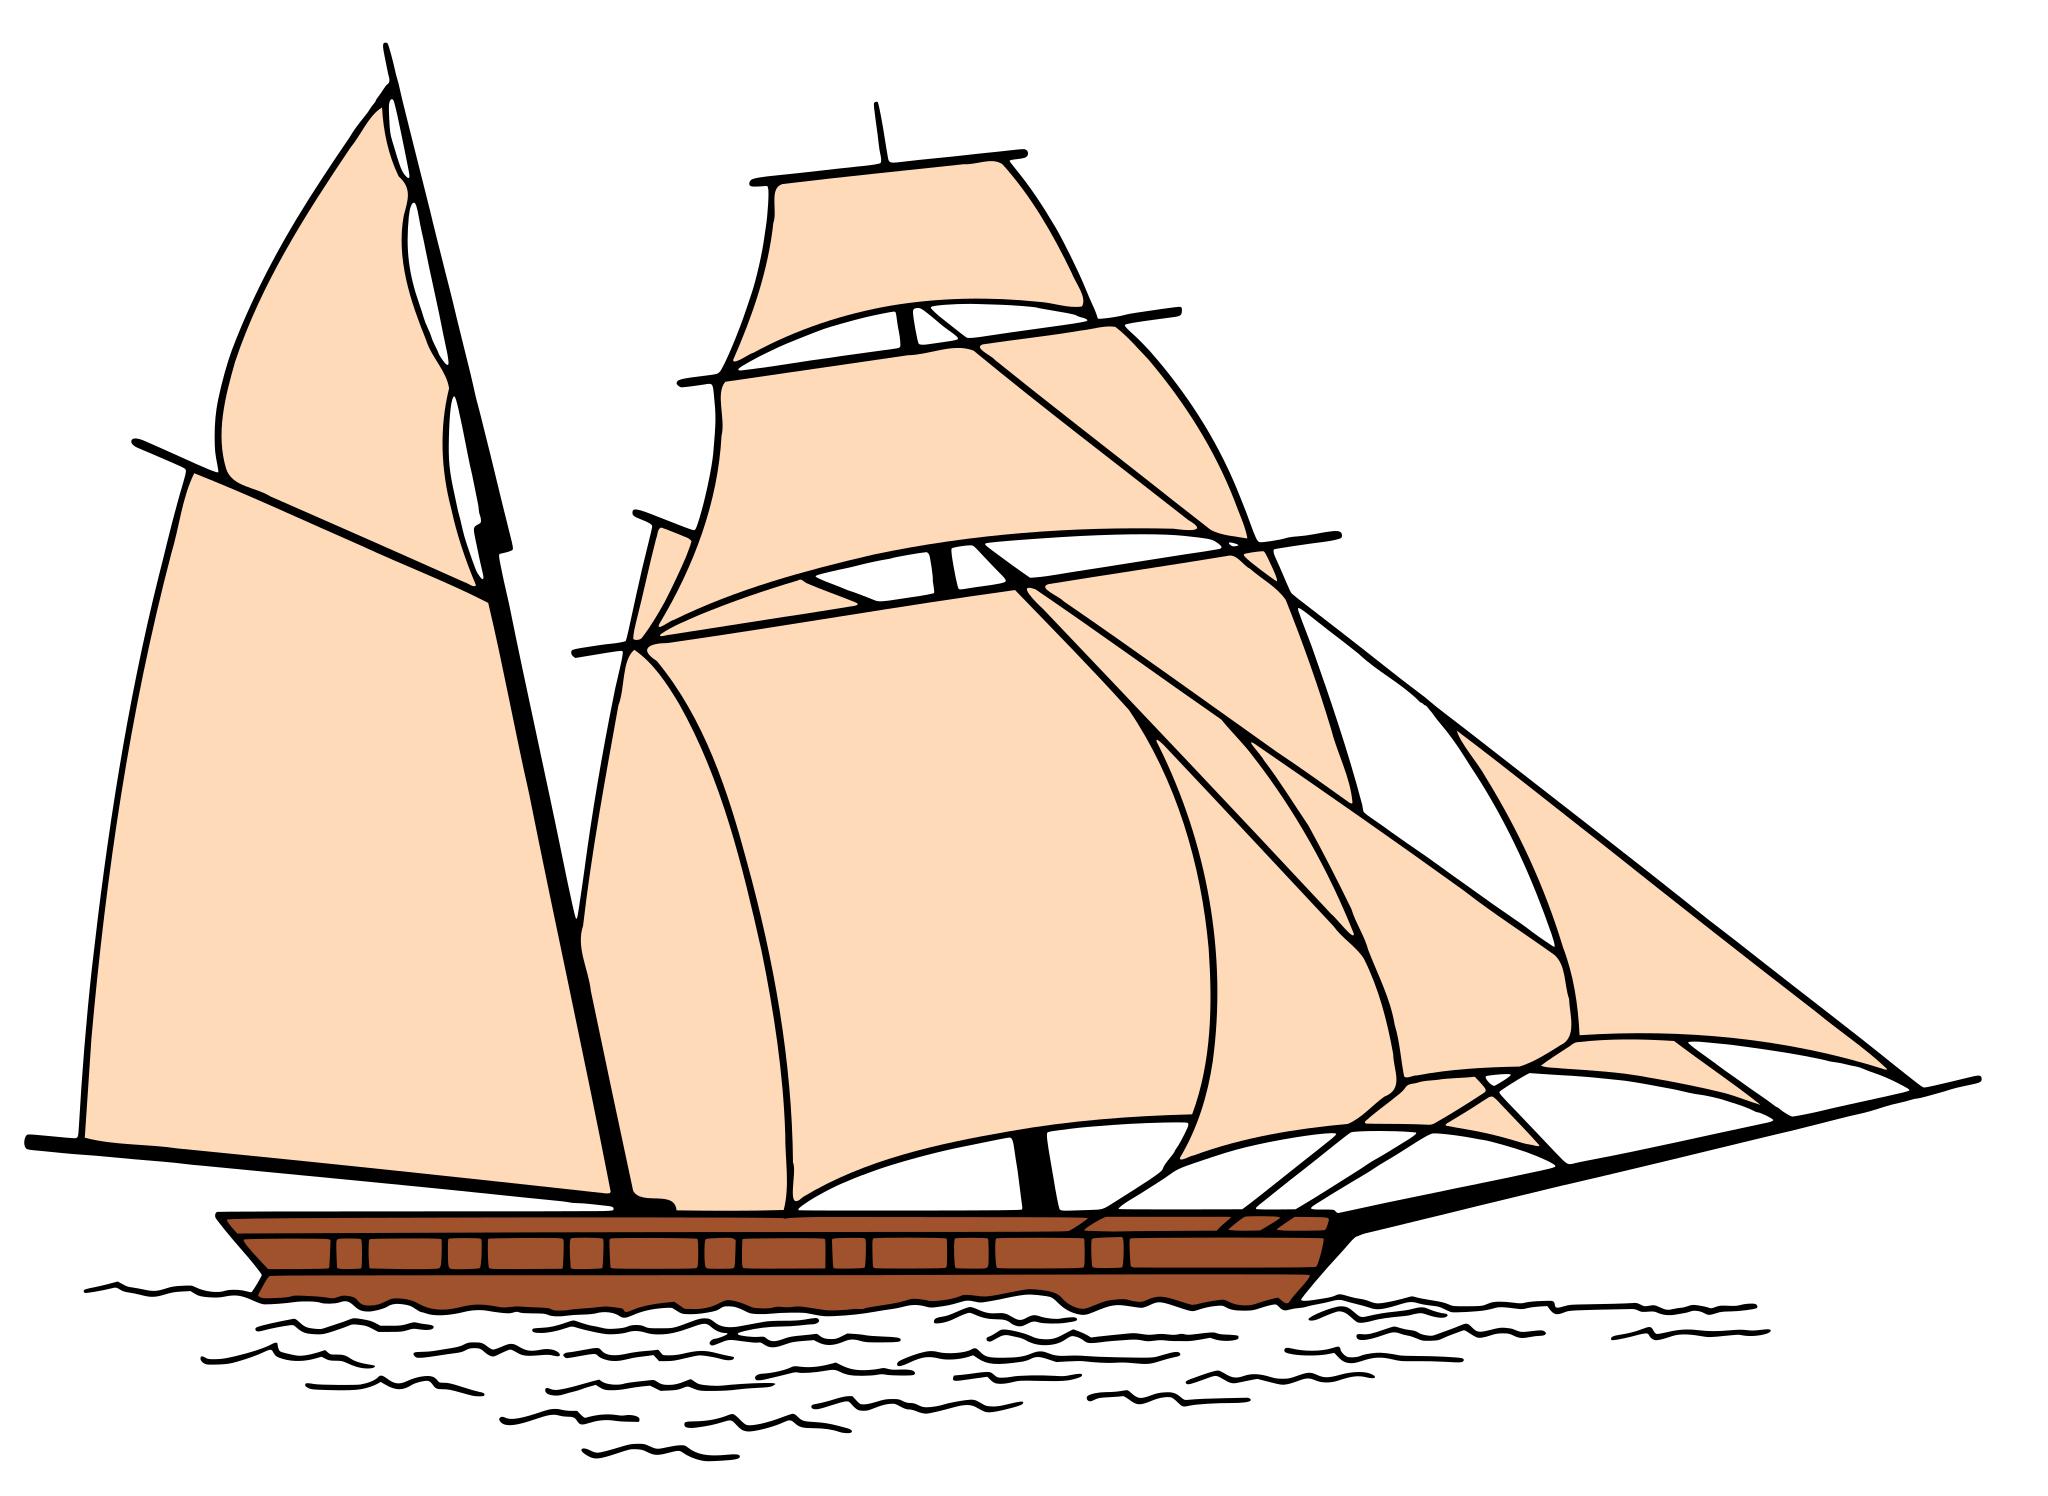 Картинка кораблика с парусами для детей